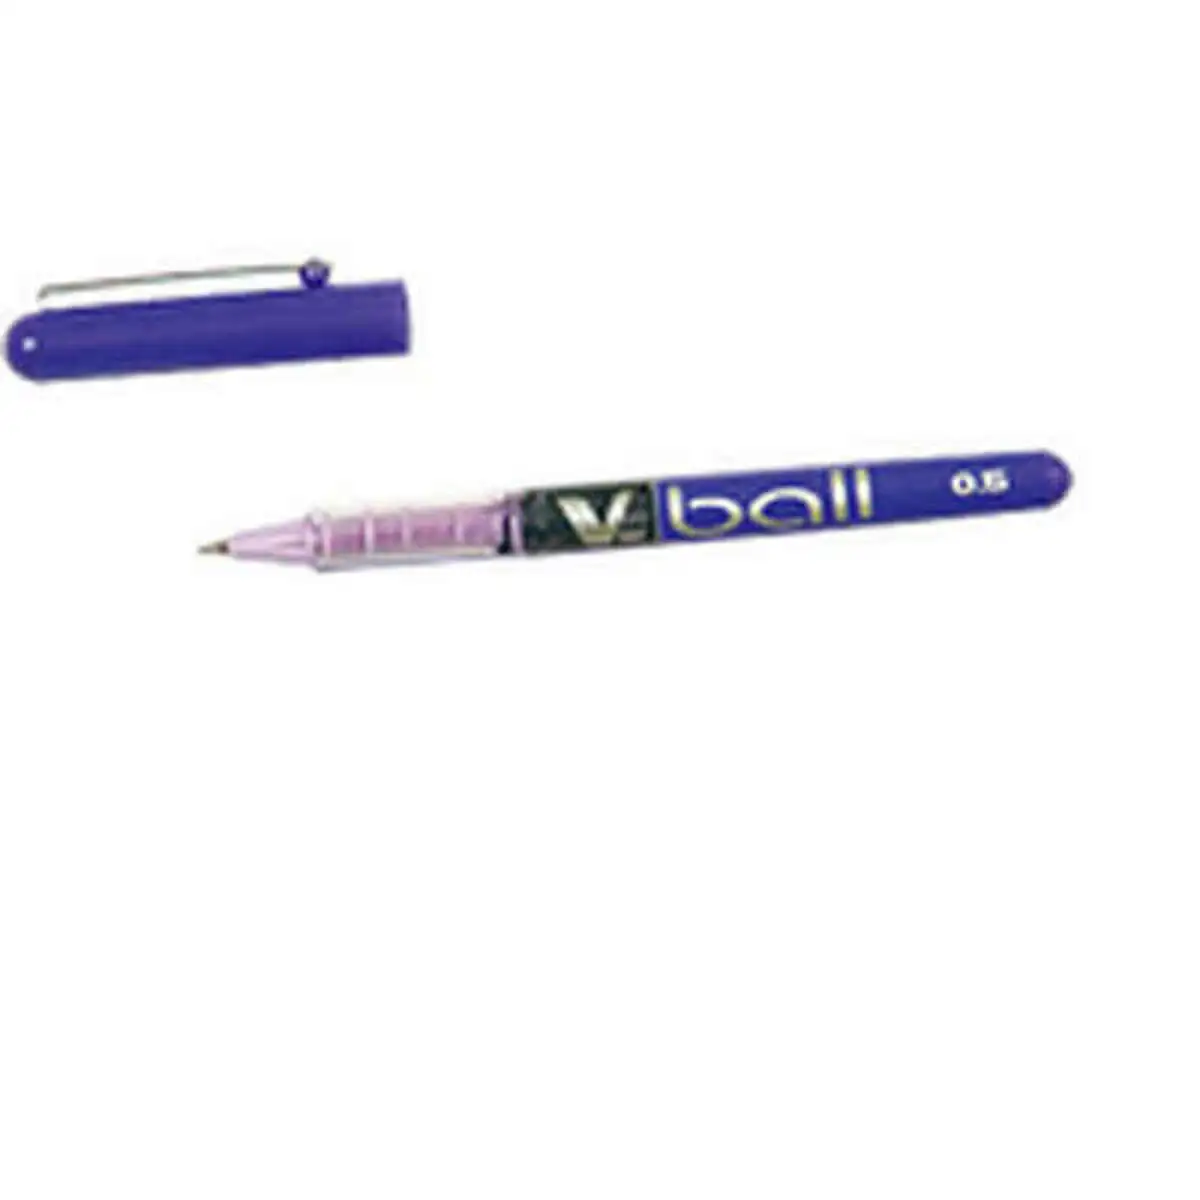 Crayon pilot bl vb 5 violet reconditionne a _2309. Découvrez DIAYTAR SENEGAL - Là où Votre Shopping Prend Vie. Plongez dans notre vaste sélection et trouvez des produits qui ajoutent une touche spéciale à votre quotidien.